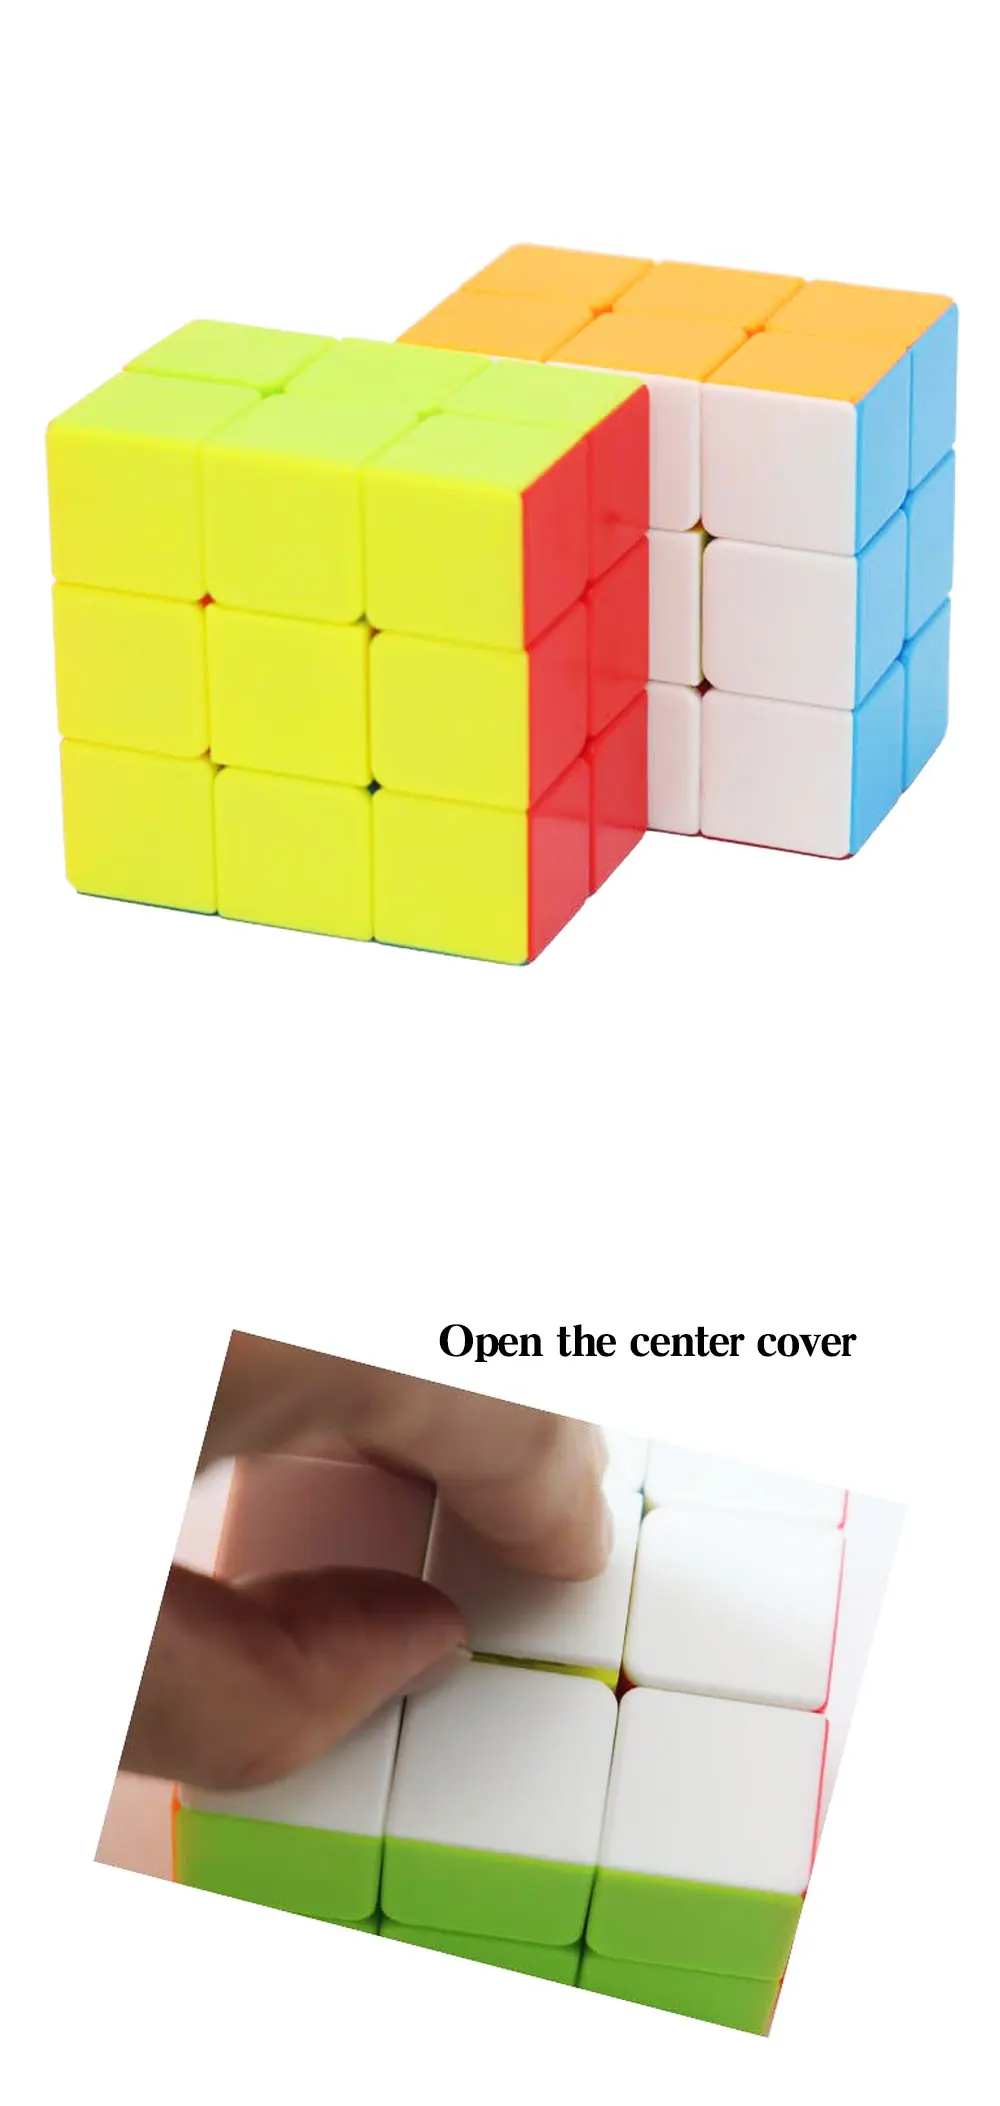 fanxin 2x3x3 скоростной кубик без наклеек Гладкий 233 магические кубики Профессиональный головоломка куб для детей Cubo magico игрушки